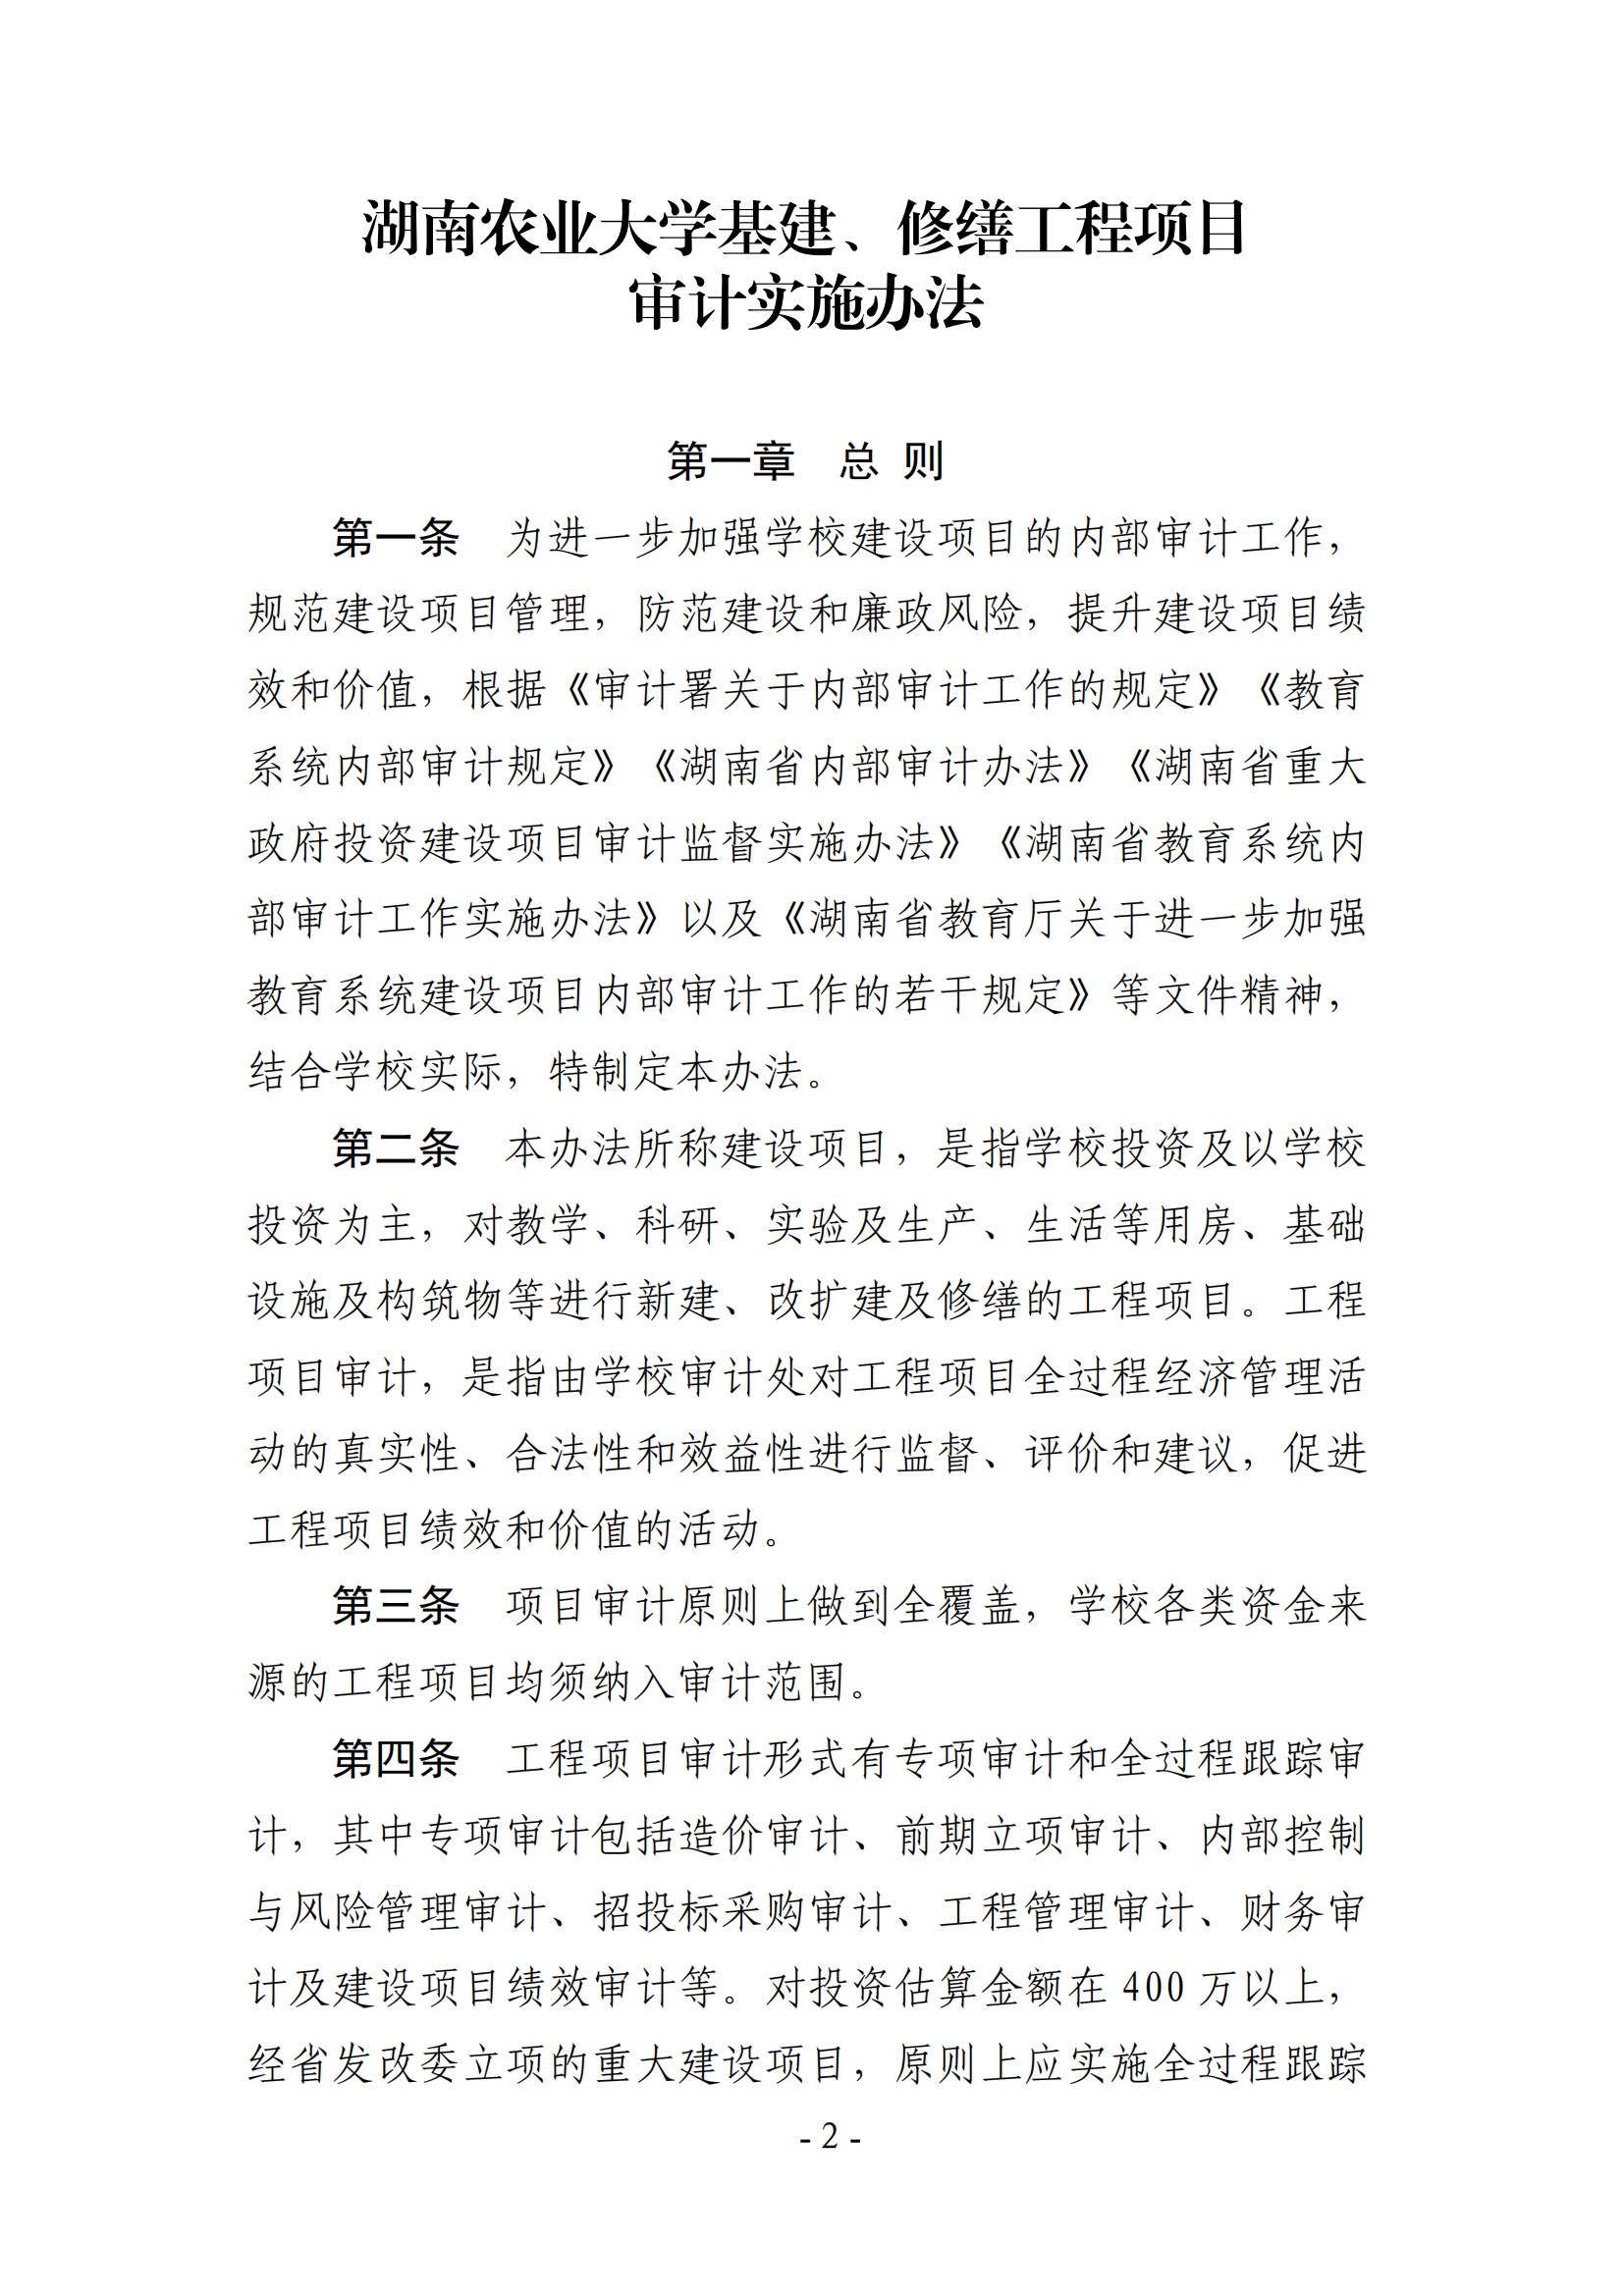 关于印发《湖南农业大学基建、修缮工程项目审计实施办法》的通知-正文_01.png